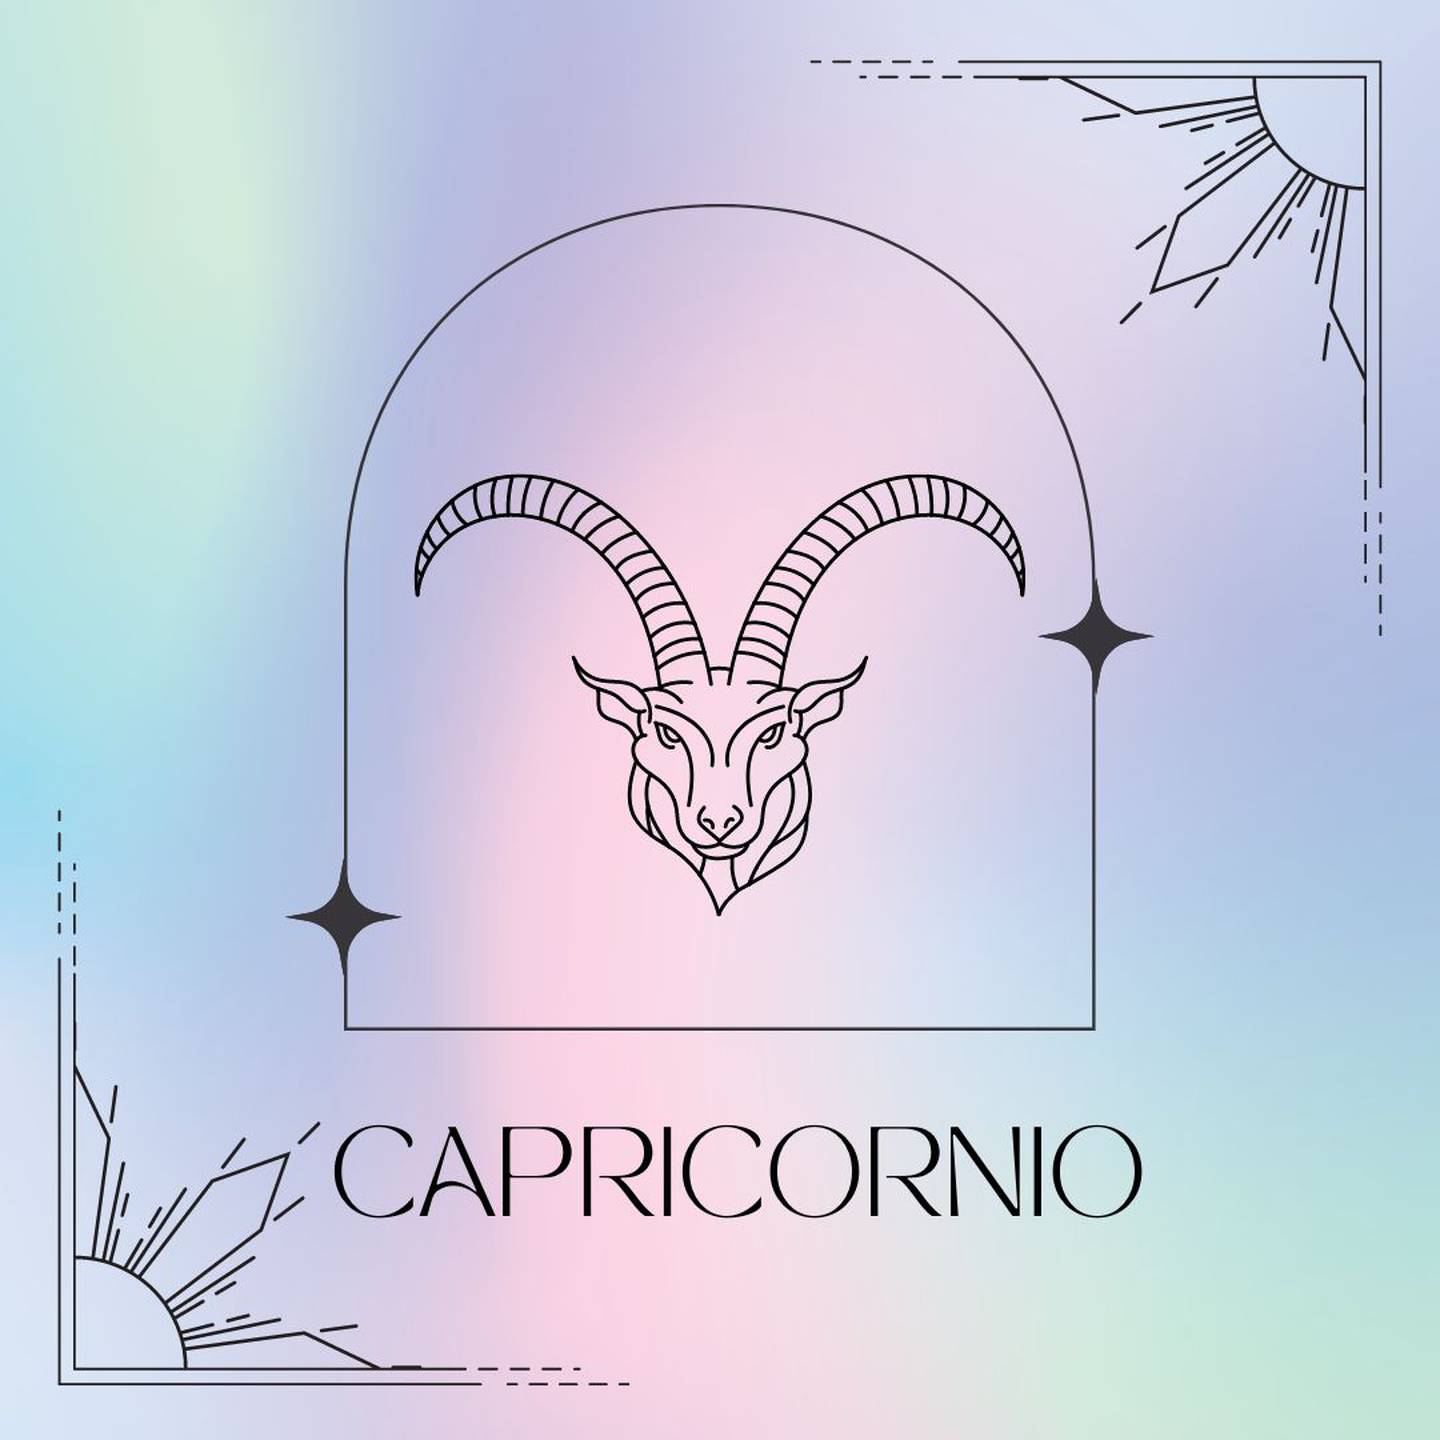 Dibujado en negro, el símbolo de Sagitario aparece enmarcado sobre un fondo de suaves colores pastel.